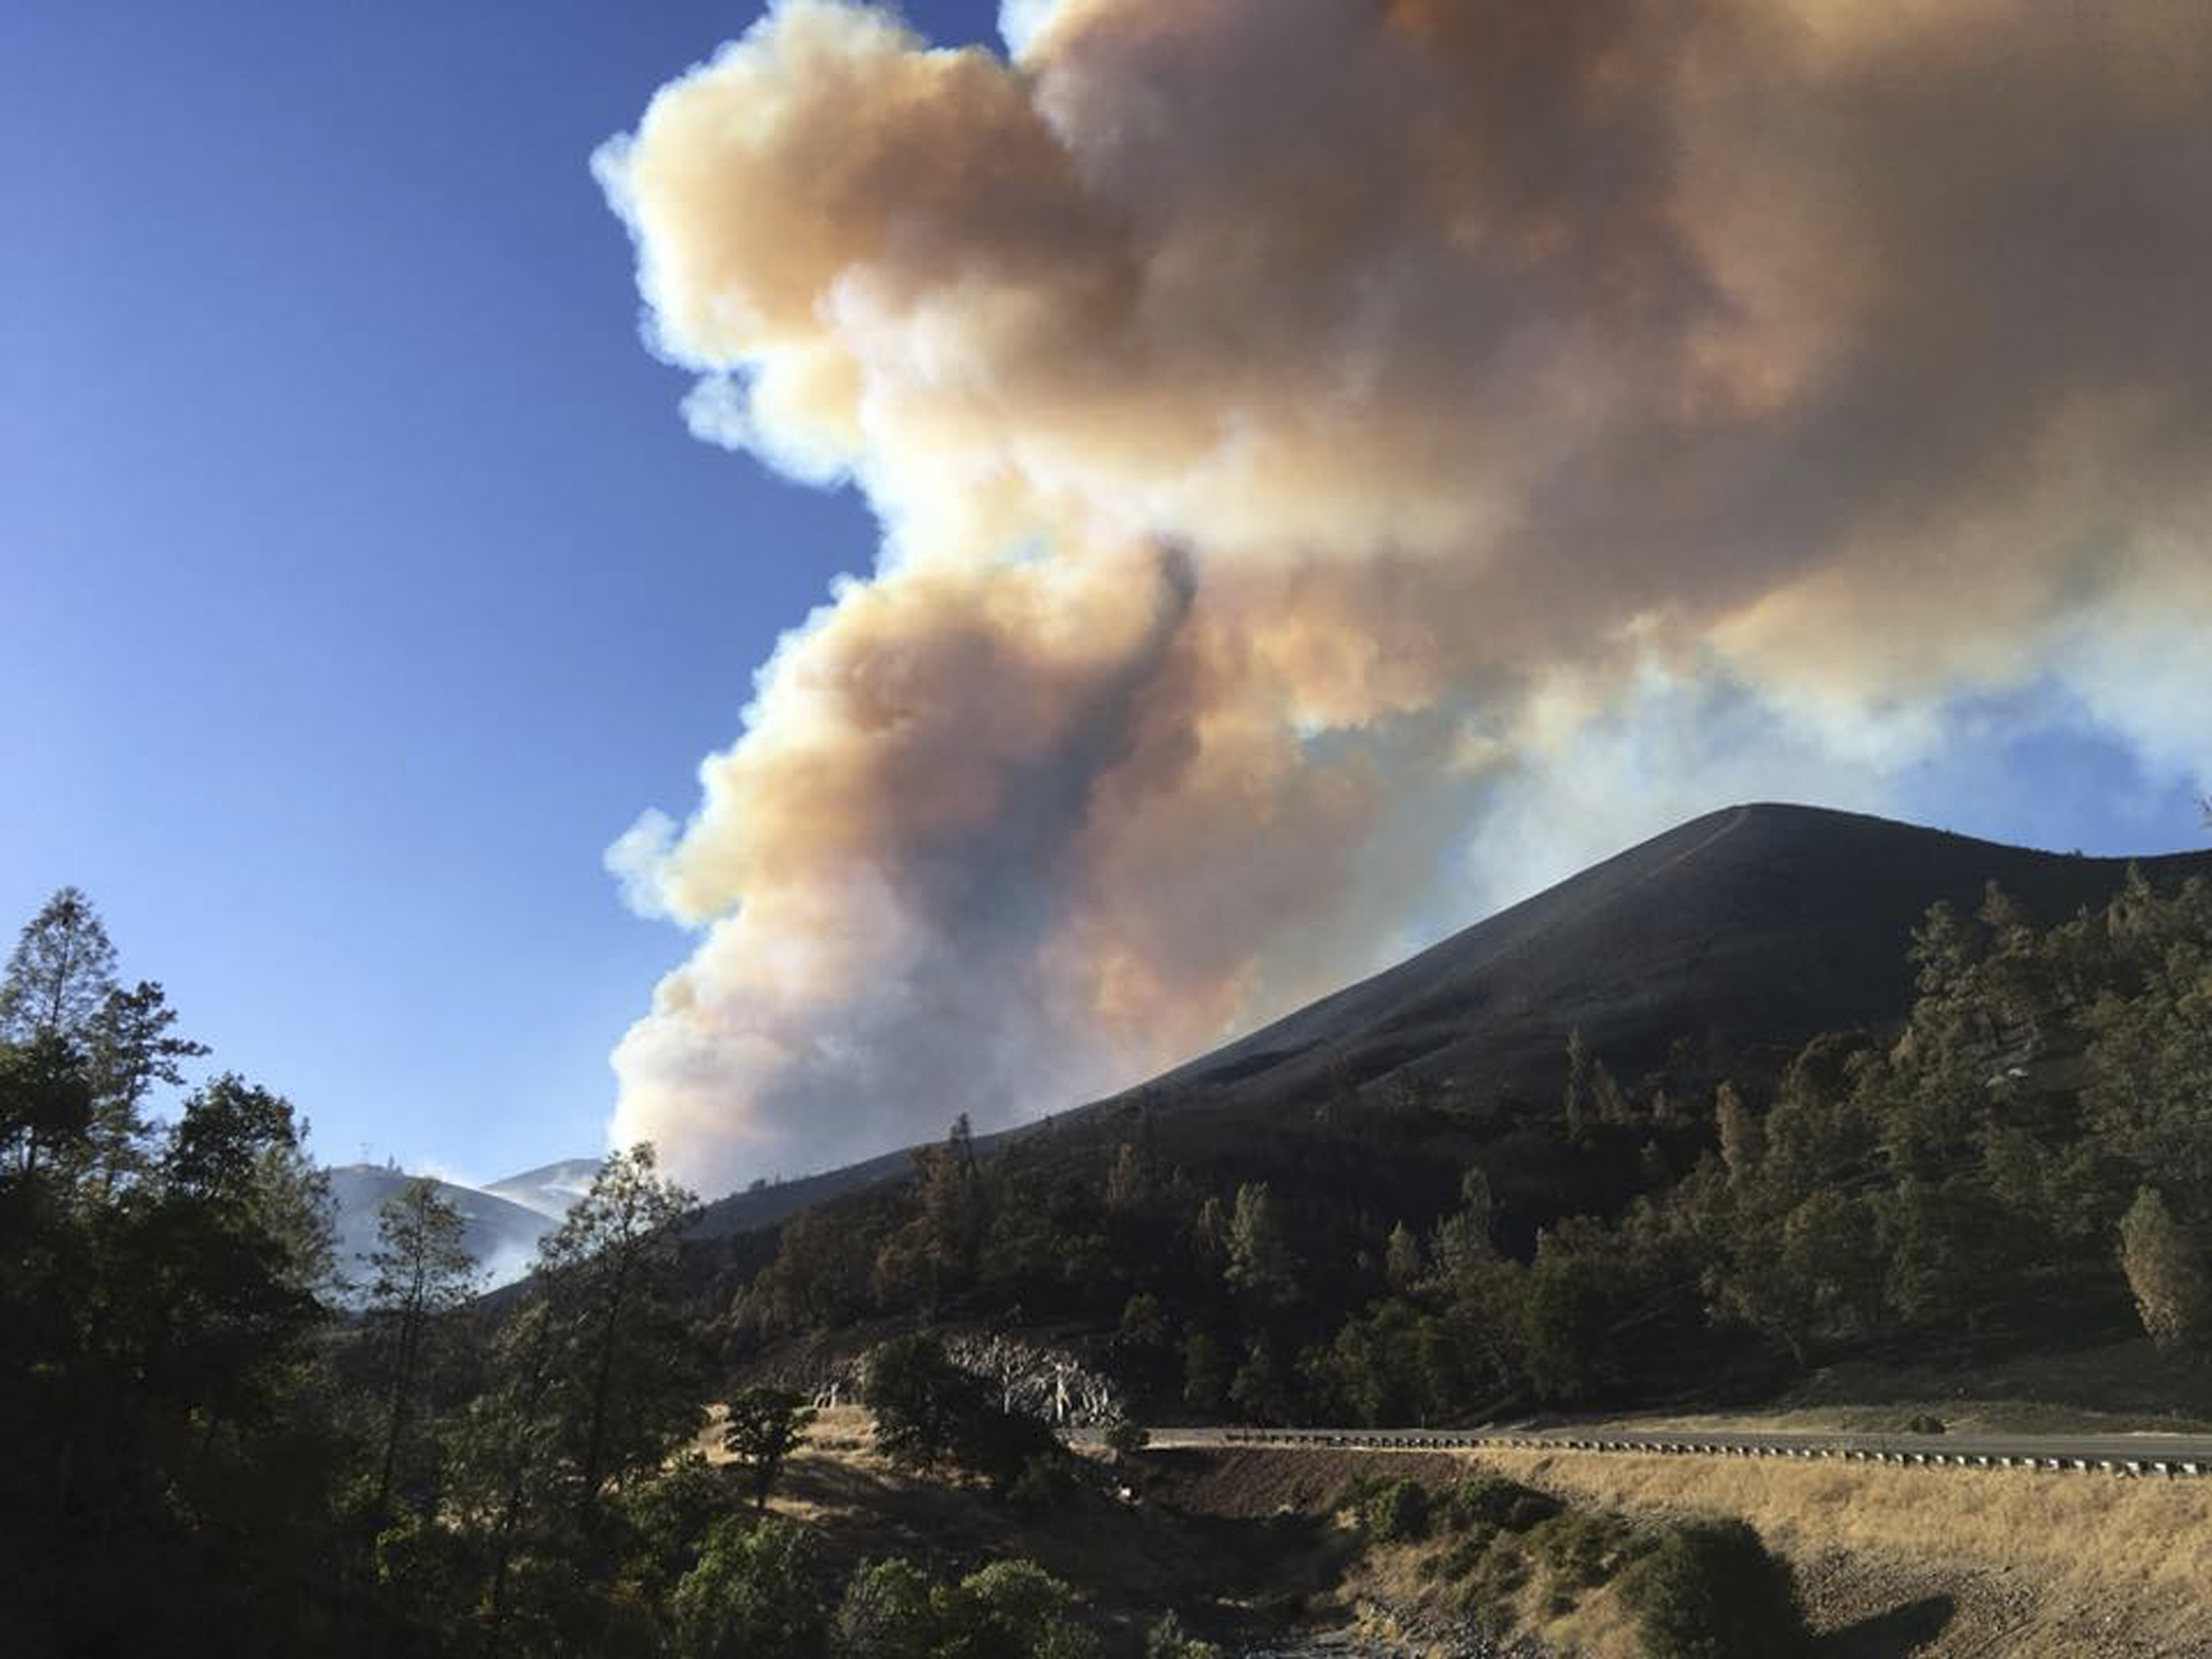 Incendios forestales "fuera de control" azotan California; evacuan a miles de personas